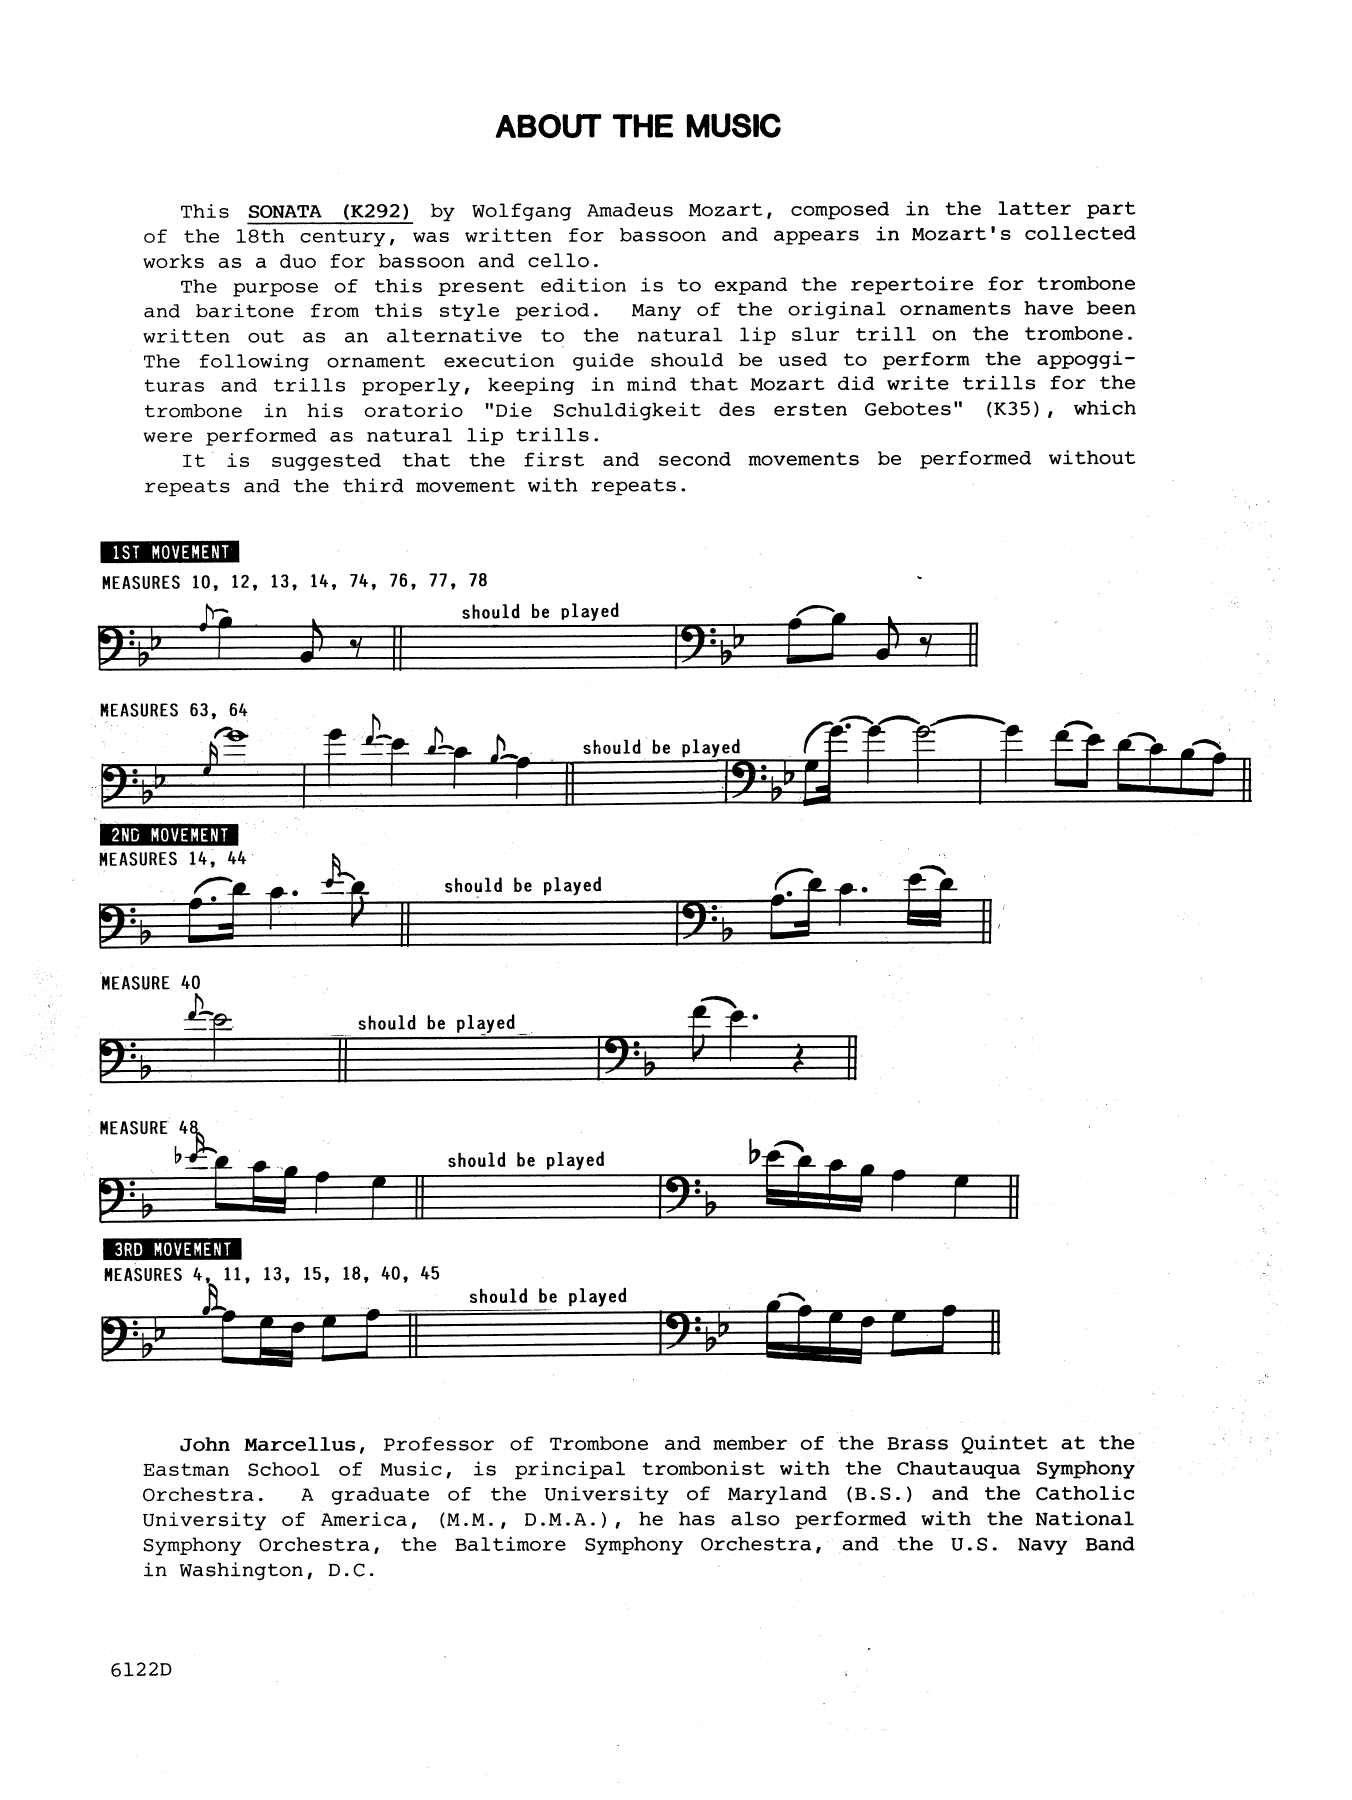 Sonata In Bb Major (K292) - Piano Accompaniment (Brass Solo) von John Marcellus